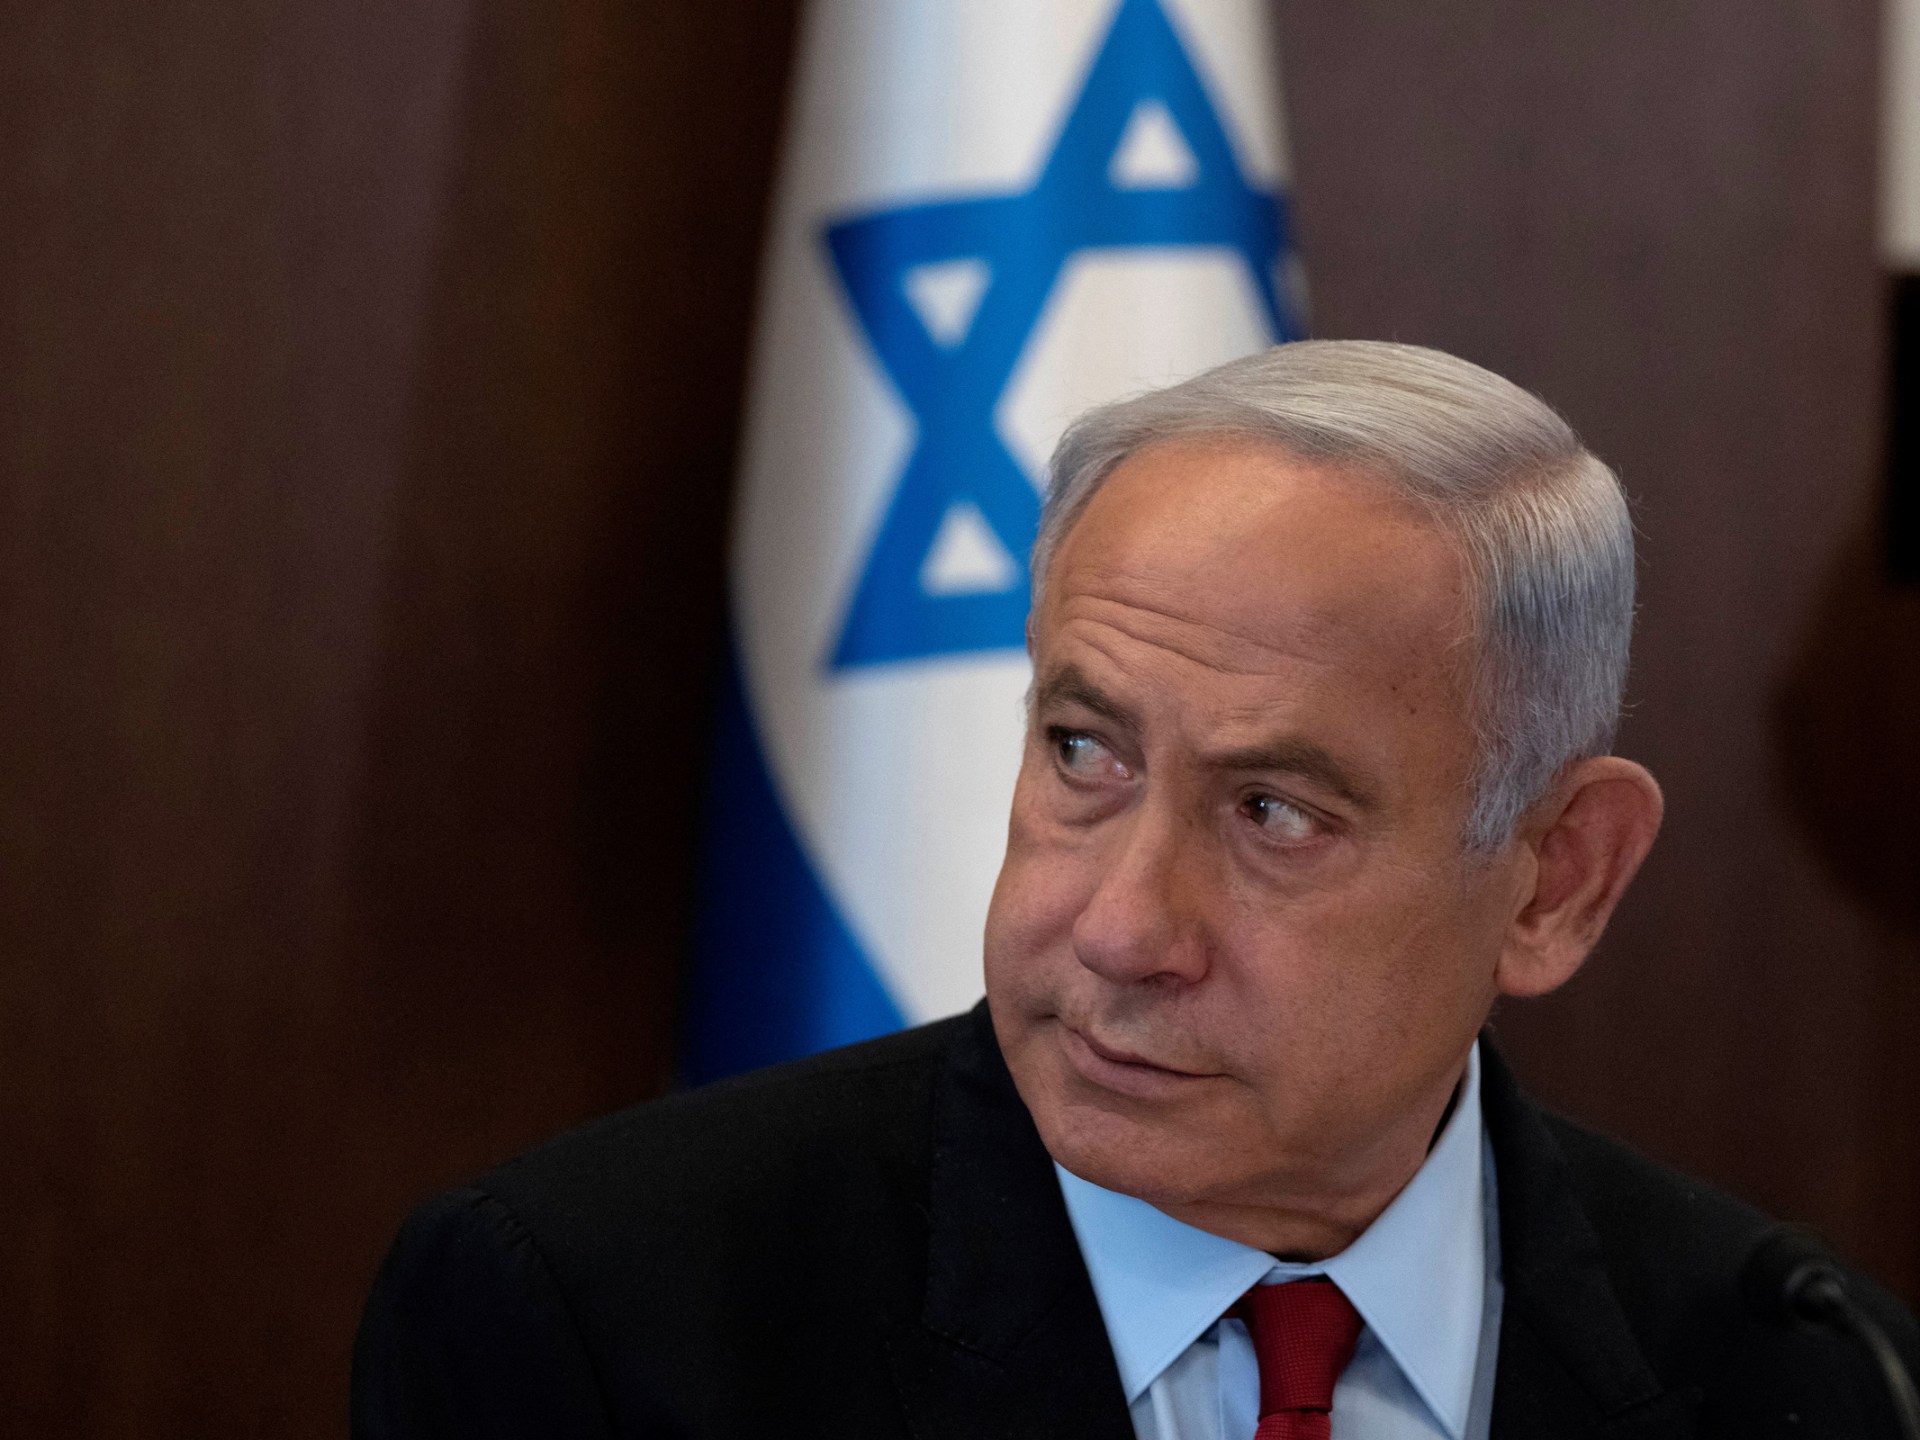 Israel PM Netanyahu delays judicial overhaul plan after protests